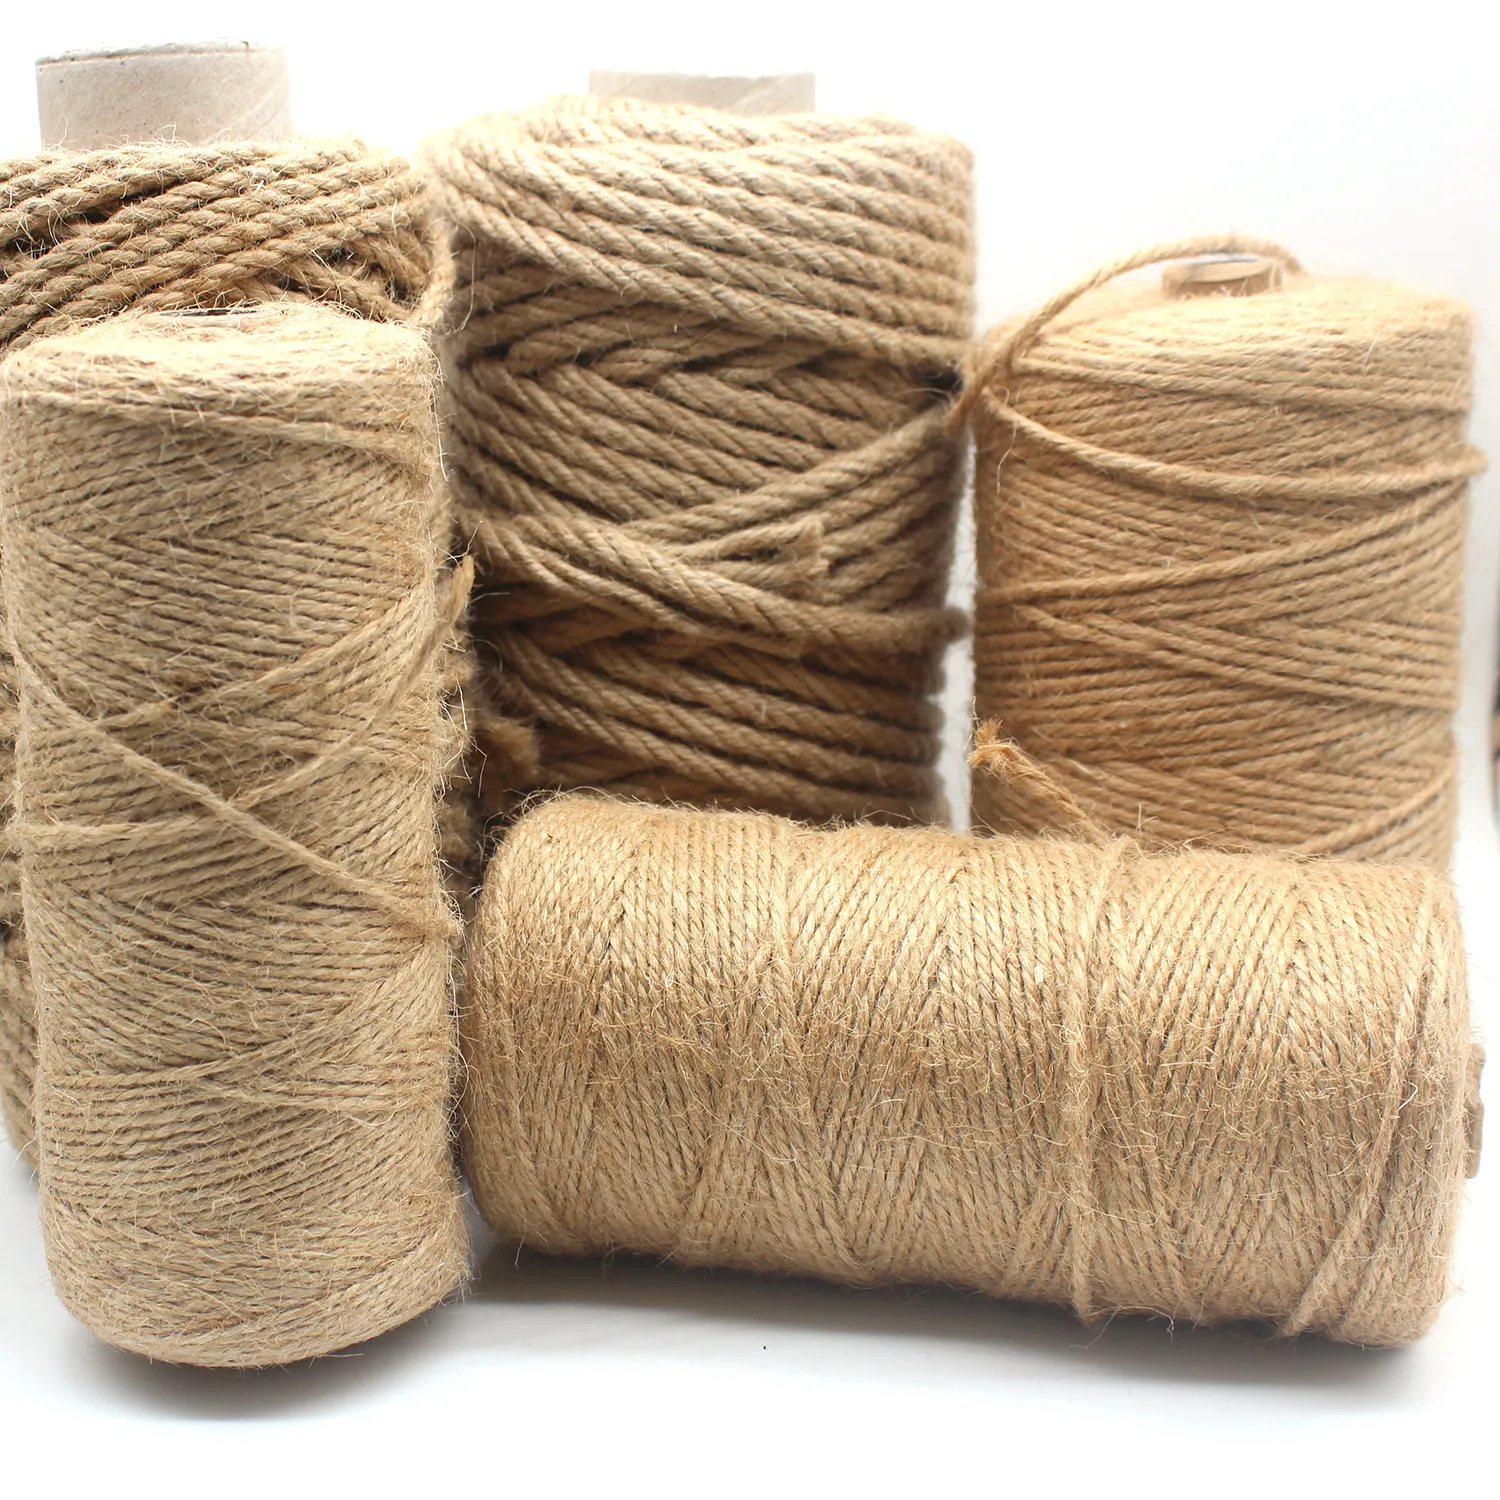 10 yards corde de jute naturel arc vintage chanvre burlap artisanat diy tissu cadeau enveloppe de couture de couture